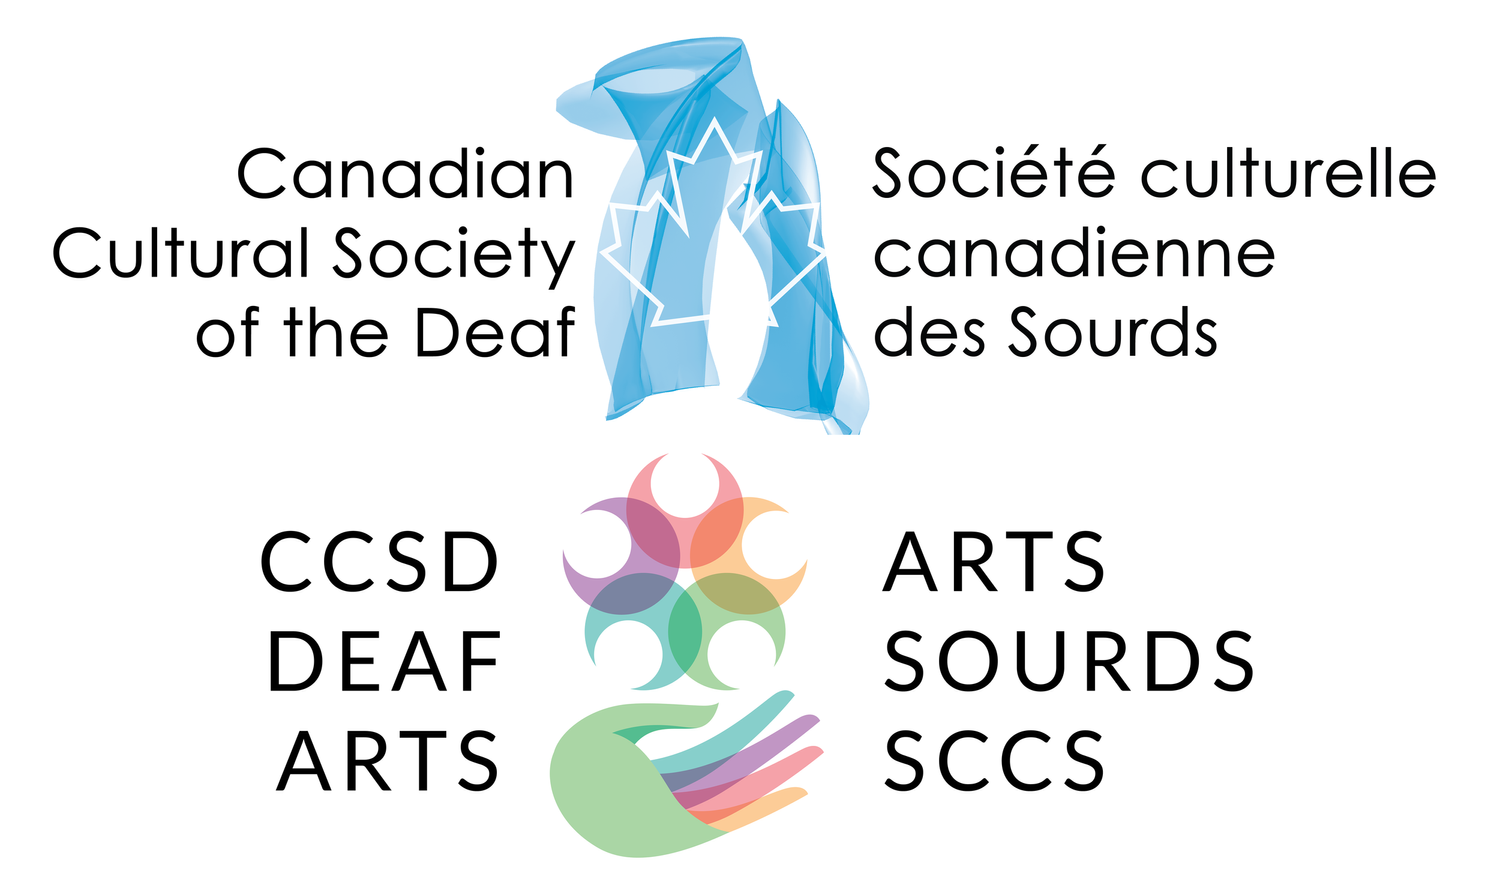 CCSD Deaf Arts - Arts sourds SCCS